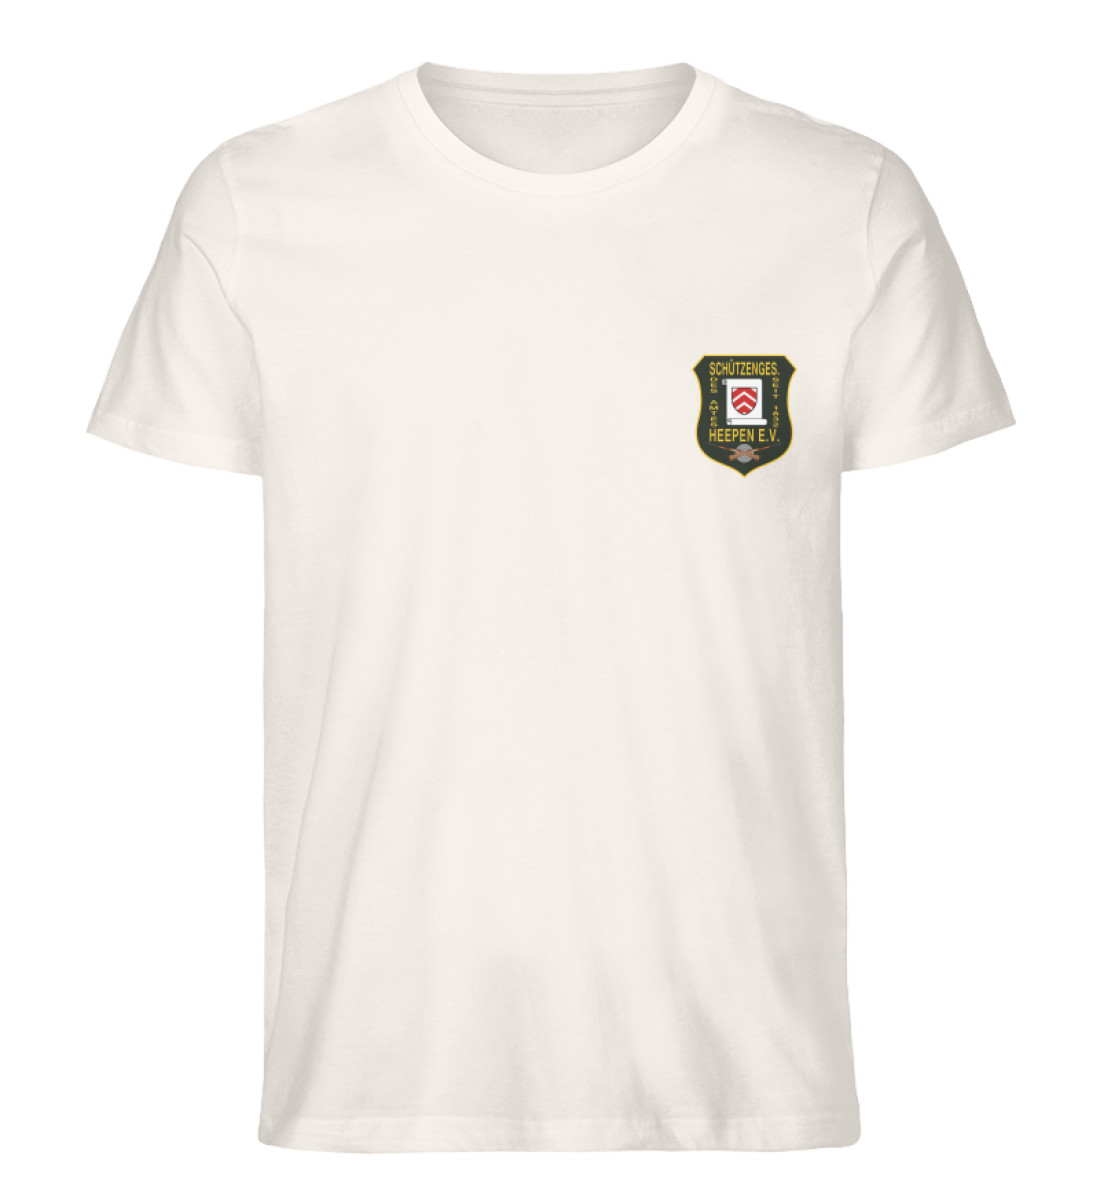 Schützengesellschaft Heepen - Herren Premium Organic Shirt-6881